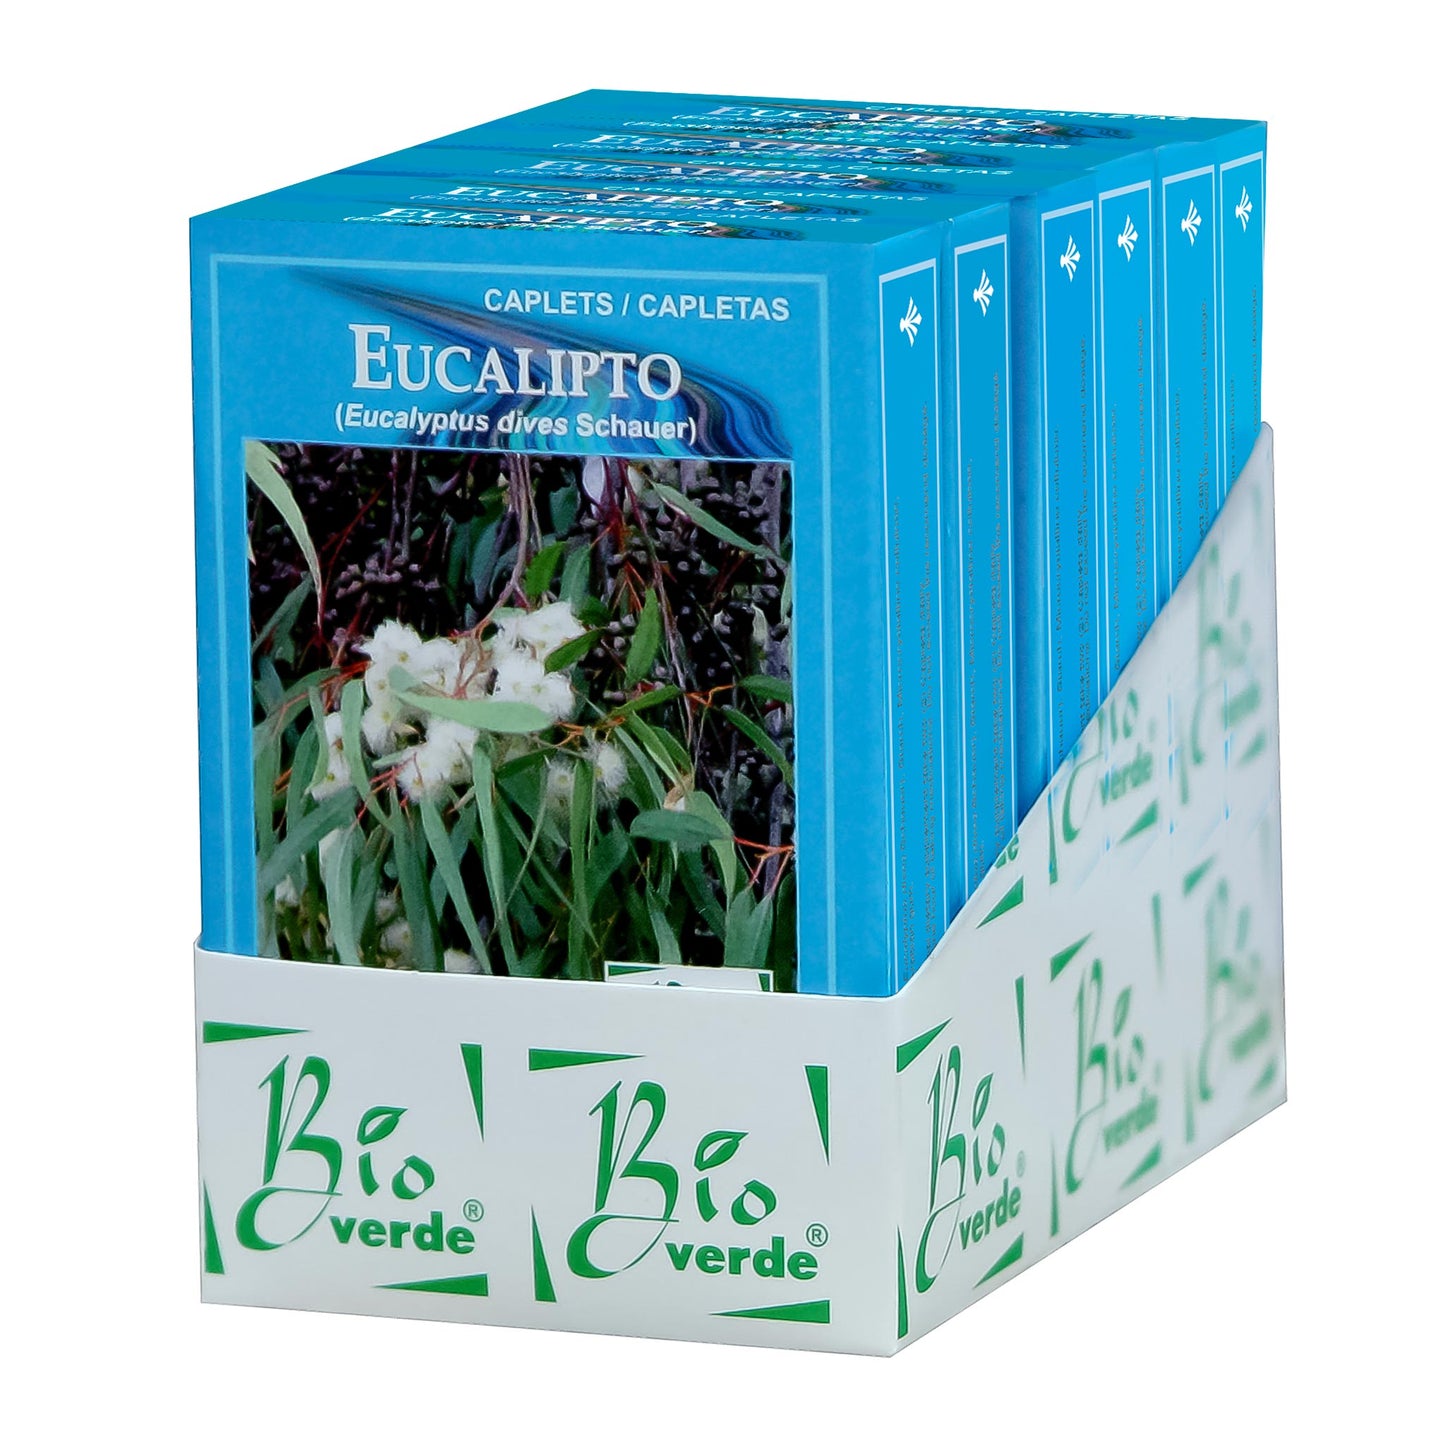 BIOVERDE ® capletas de eucalipto 6 cajas con 60